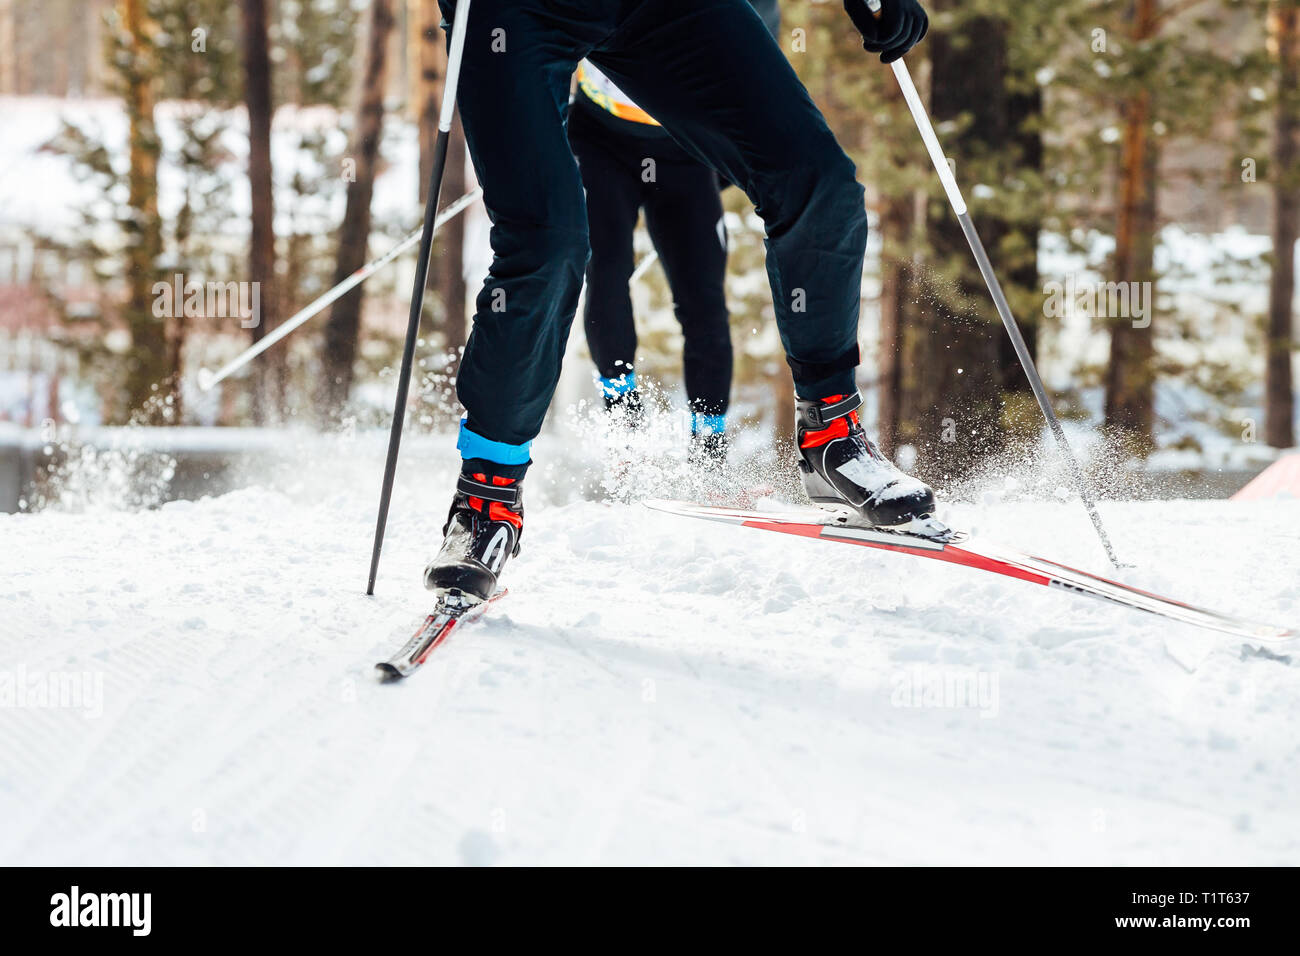 Deux skieurs de descente course cross-country Banque D'Images